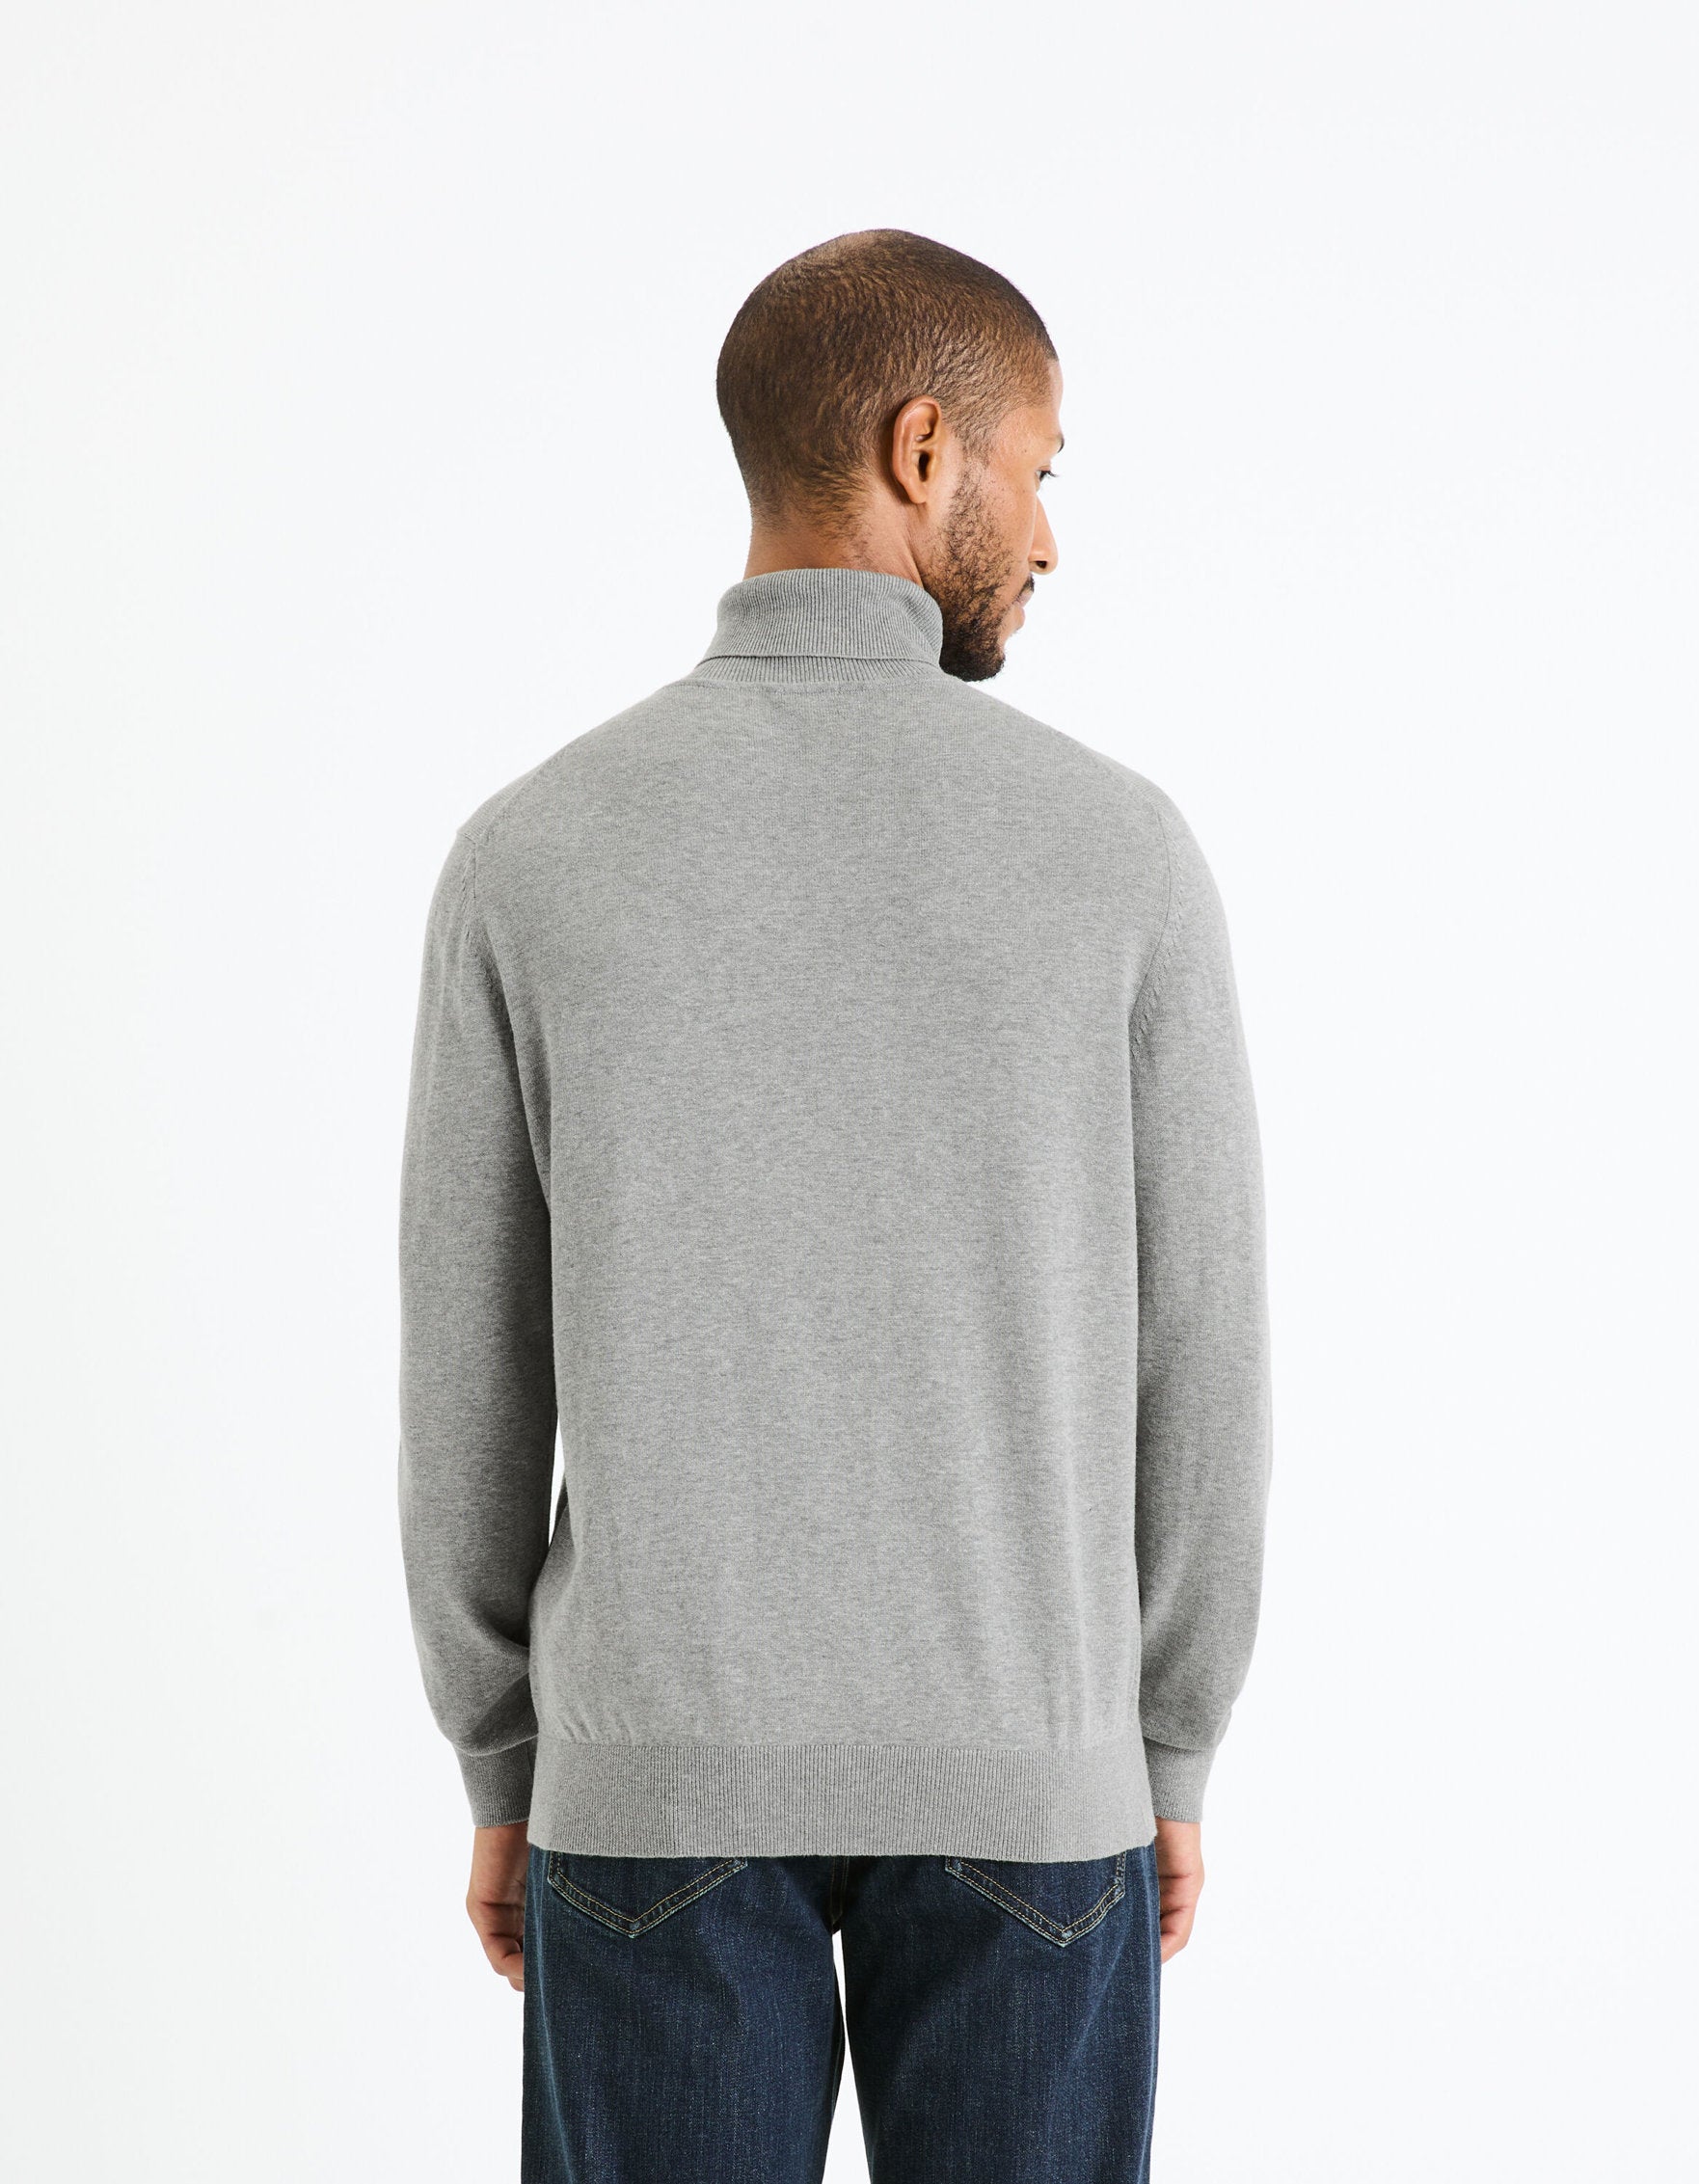 100% Cotton Turtleneck Sweater_FEROLL_GREY MEL_04